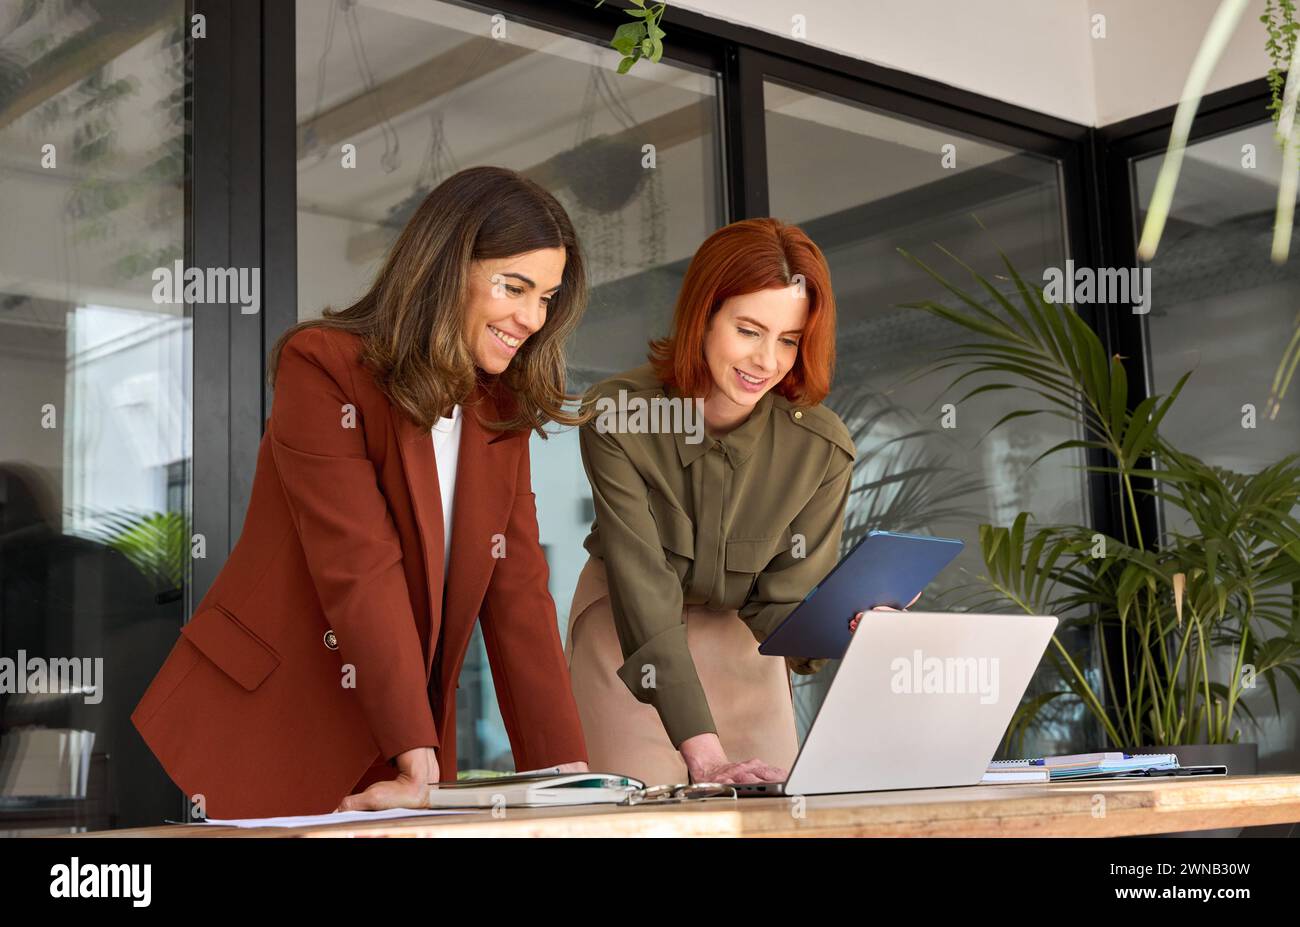 Deux partenaires féminins professionnels souriants travaillant au bureau regardant un ordinateur portable. Banque D'Images